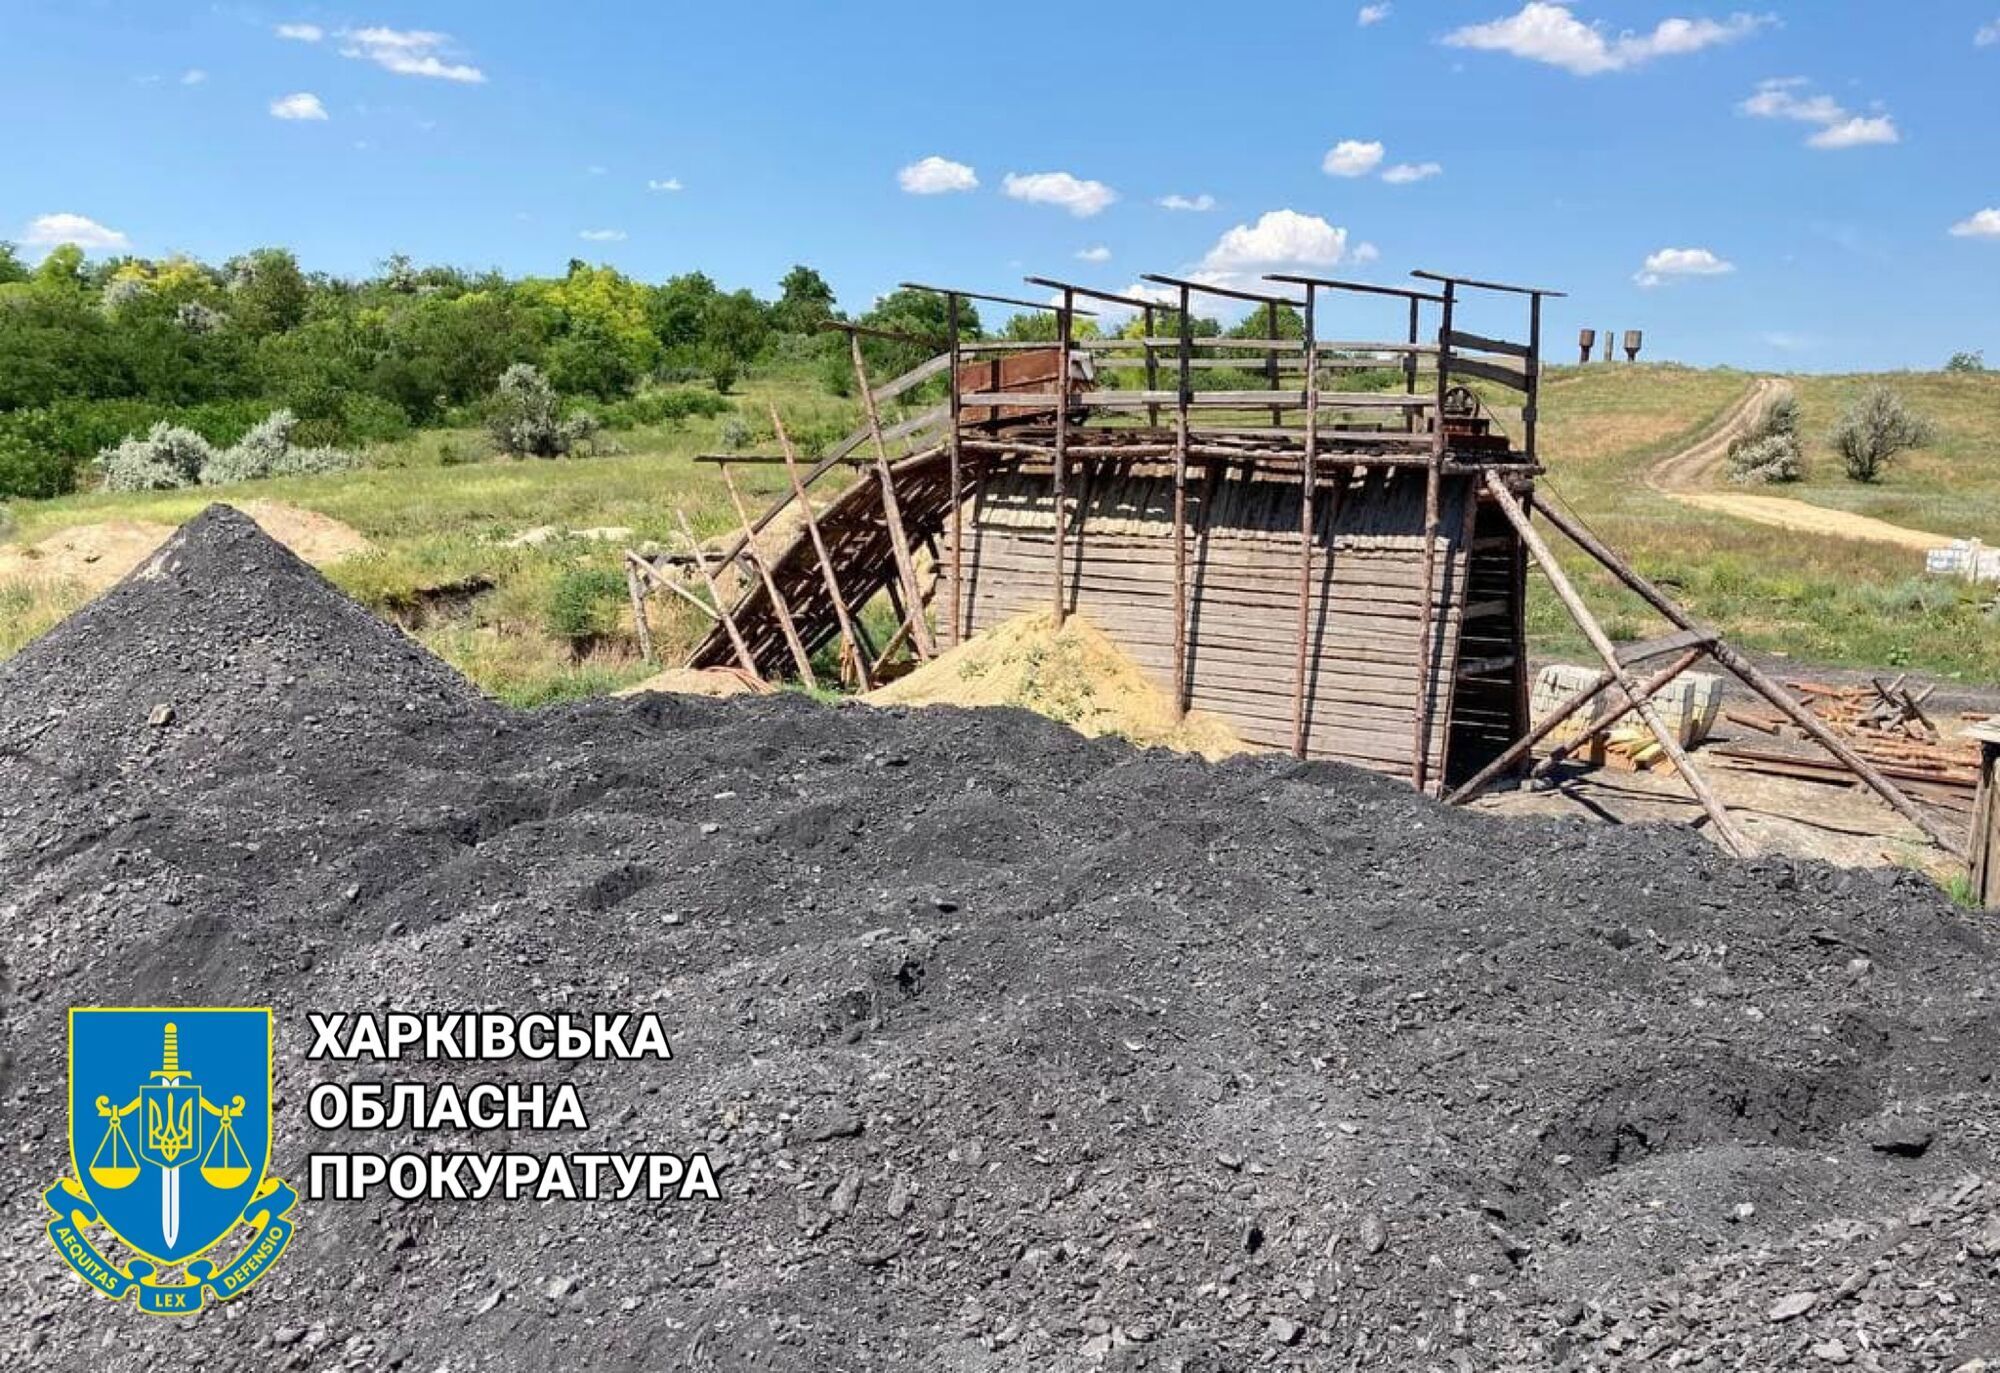 Прокуратура продовжує боротьбу з незаконним видобутком надр: повідомлено про підозру директору шахти (ФОТО)